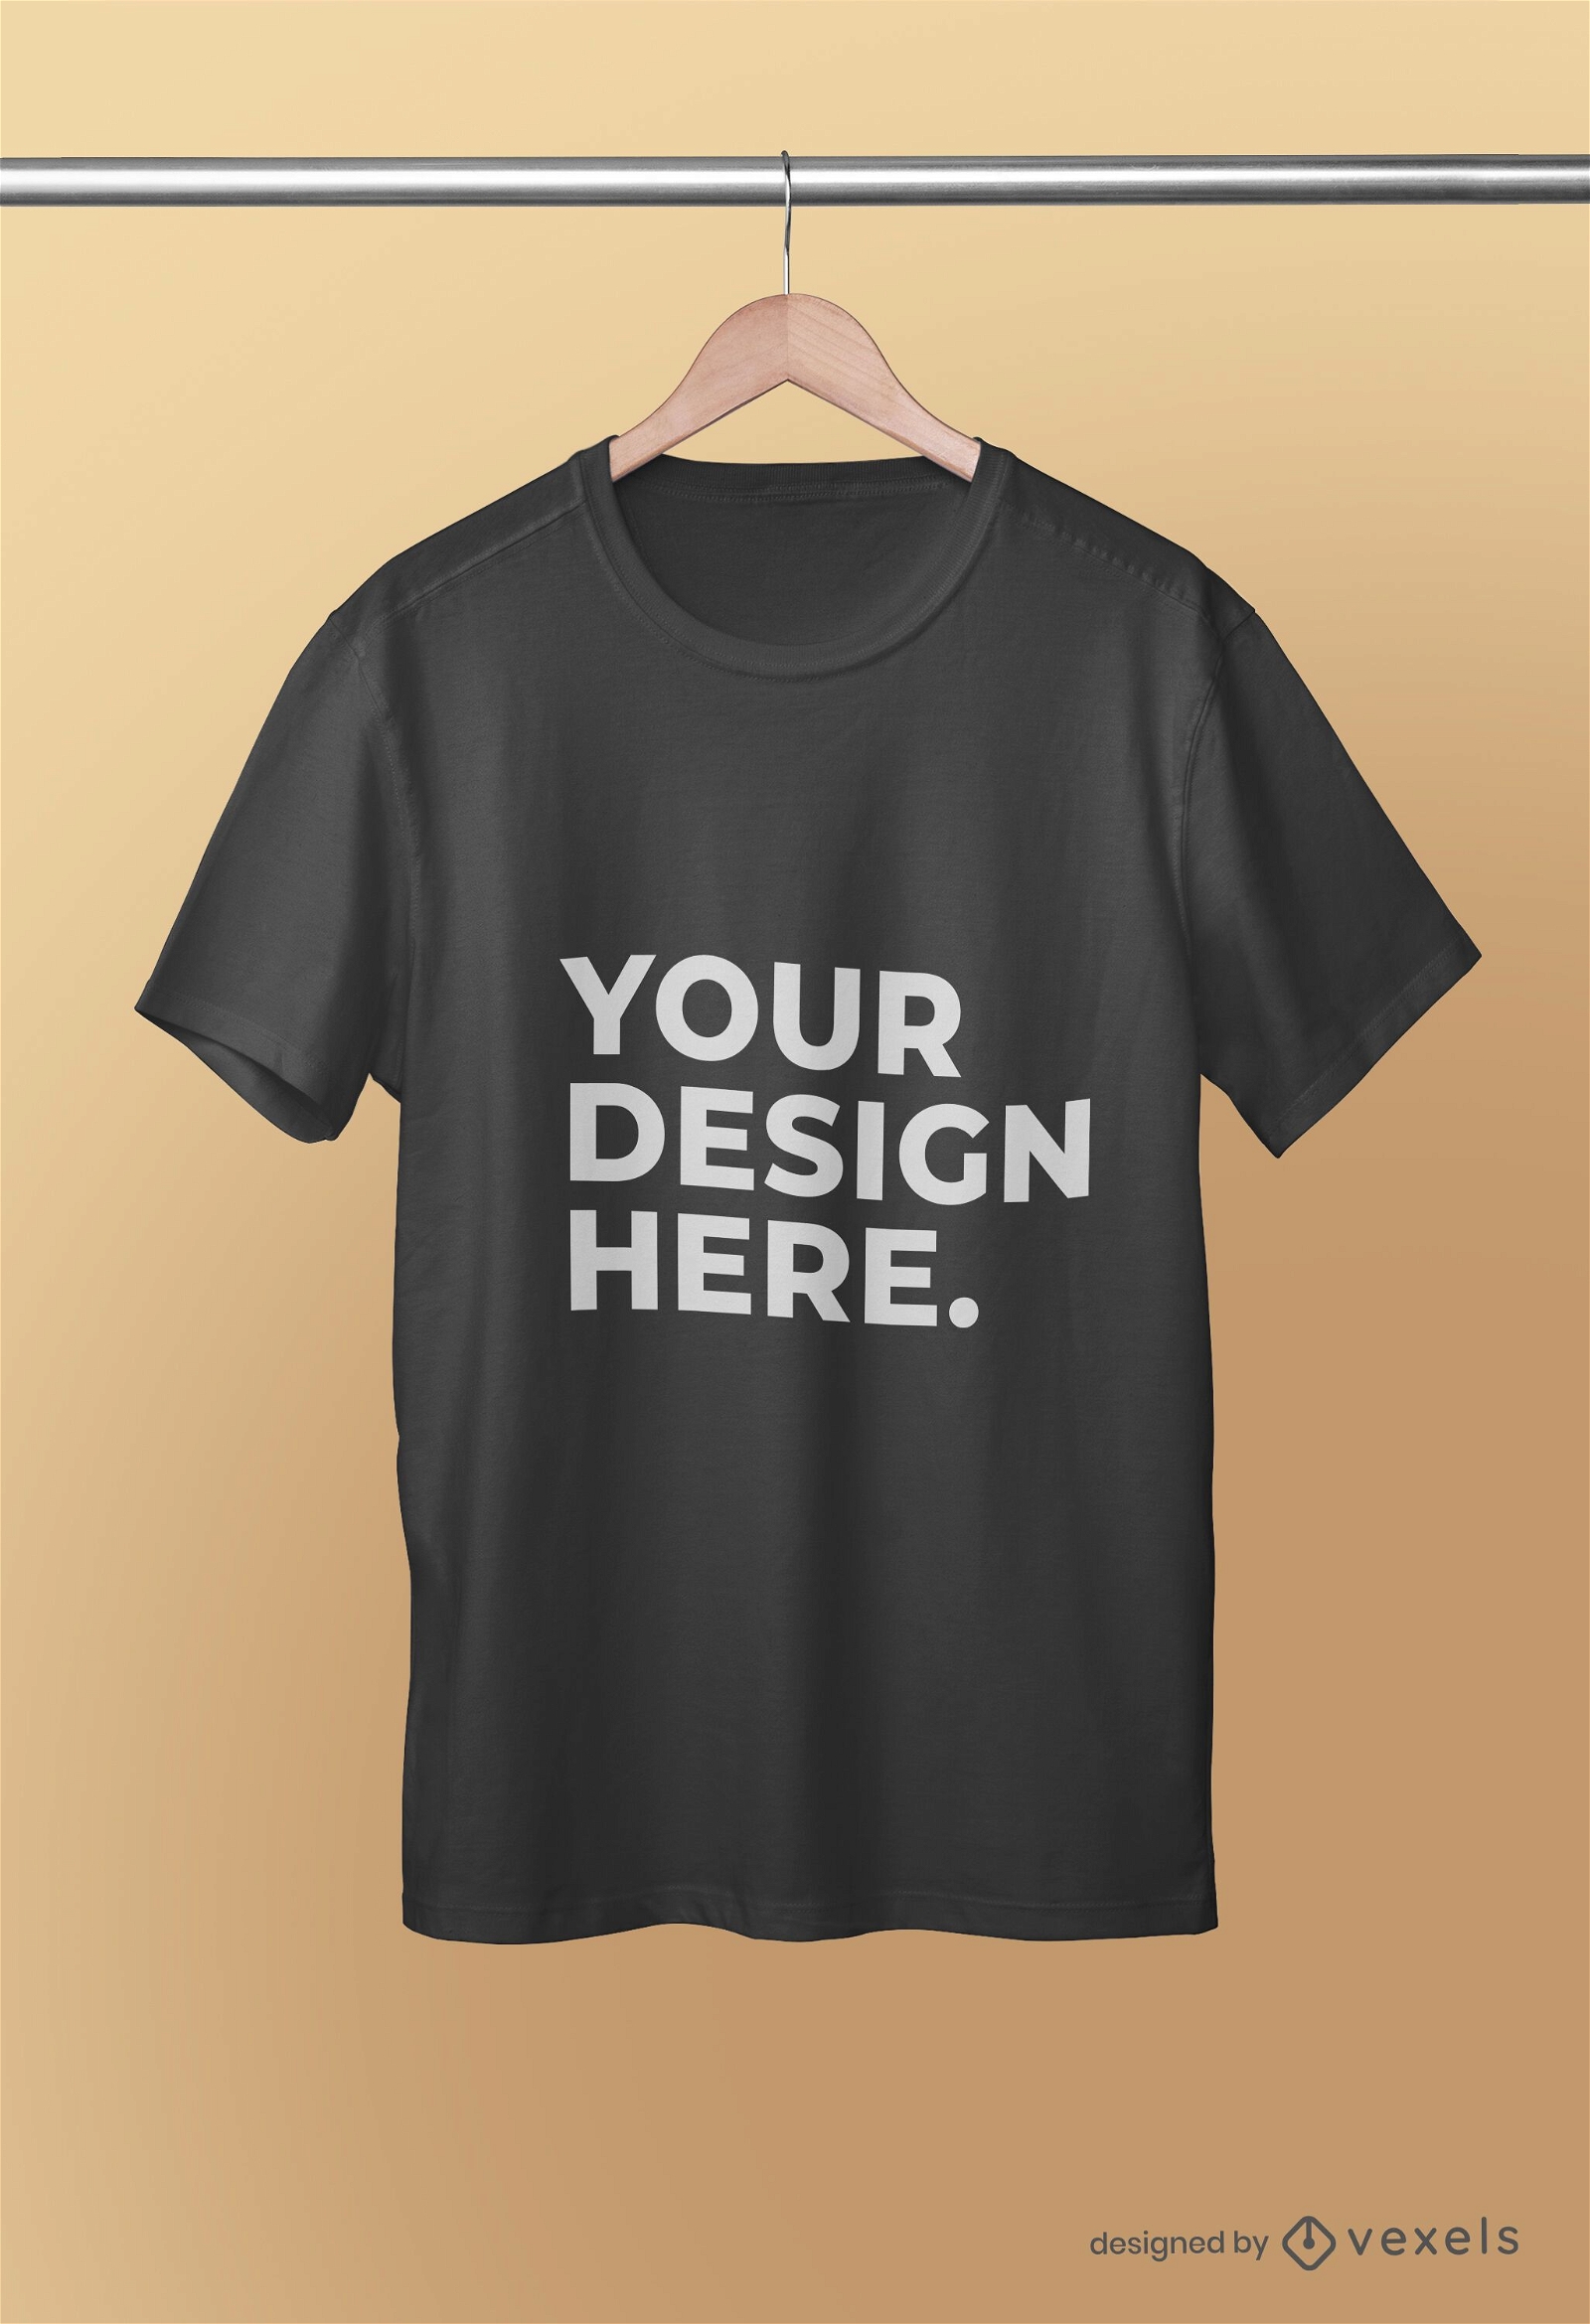 H?ngte T-Shirt Modell psd Design